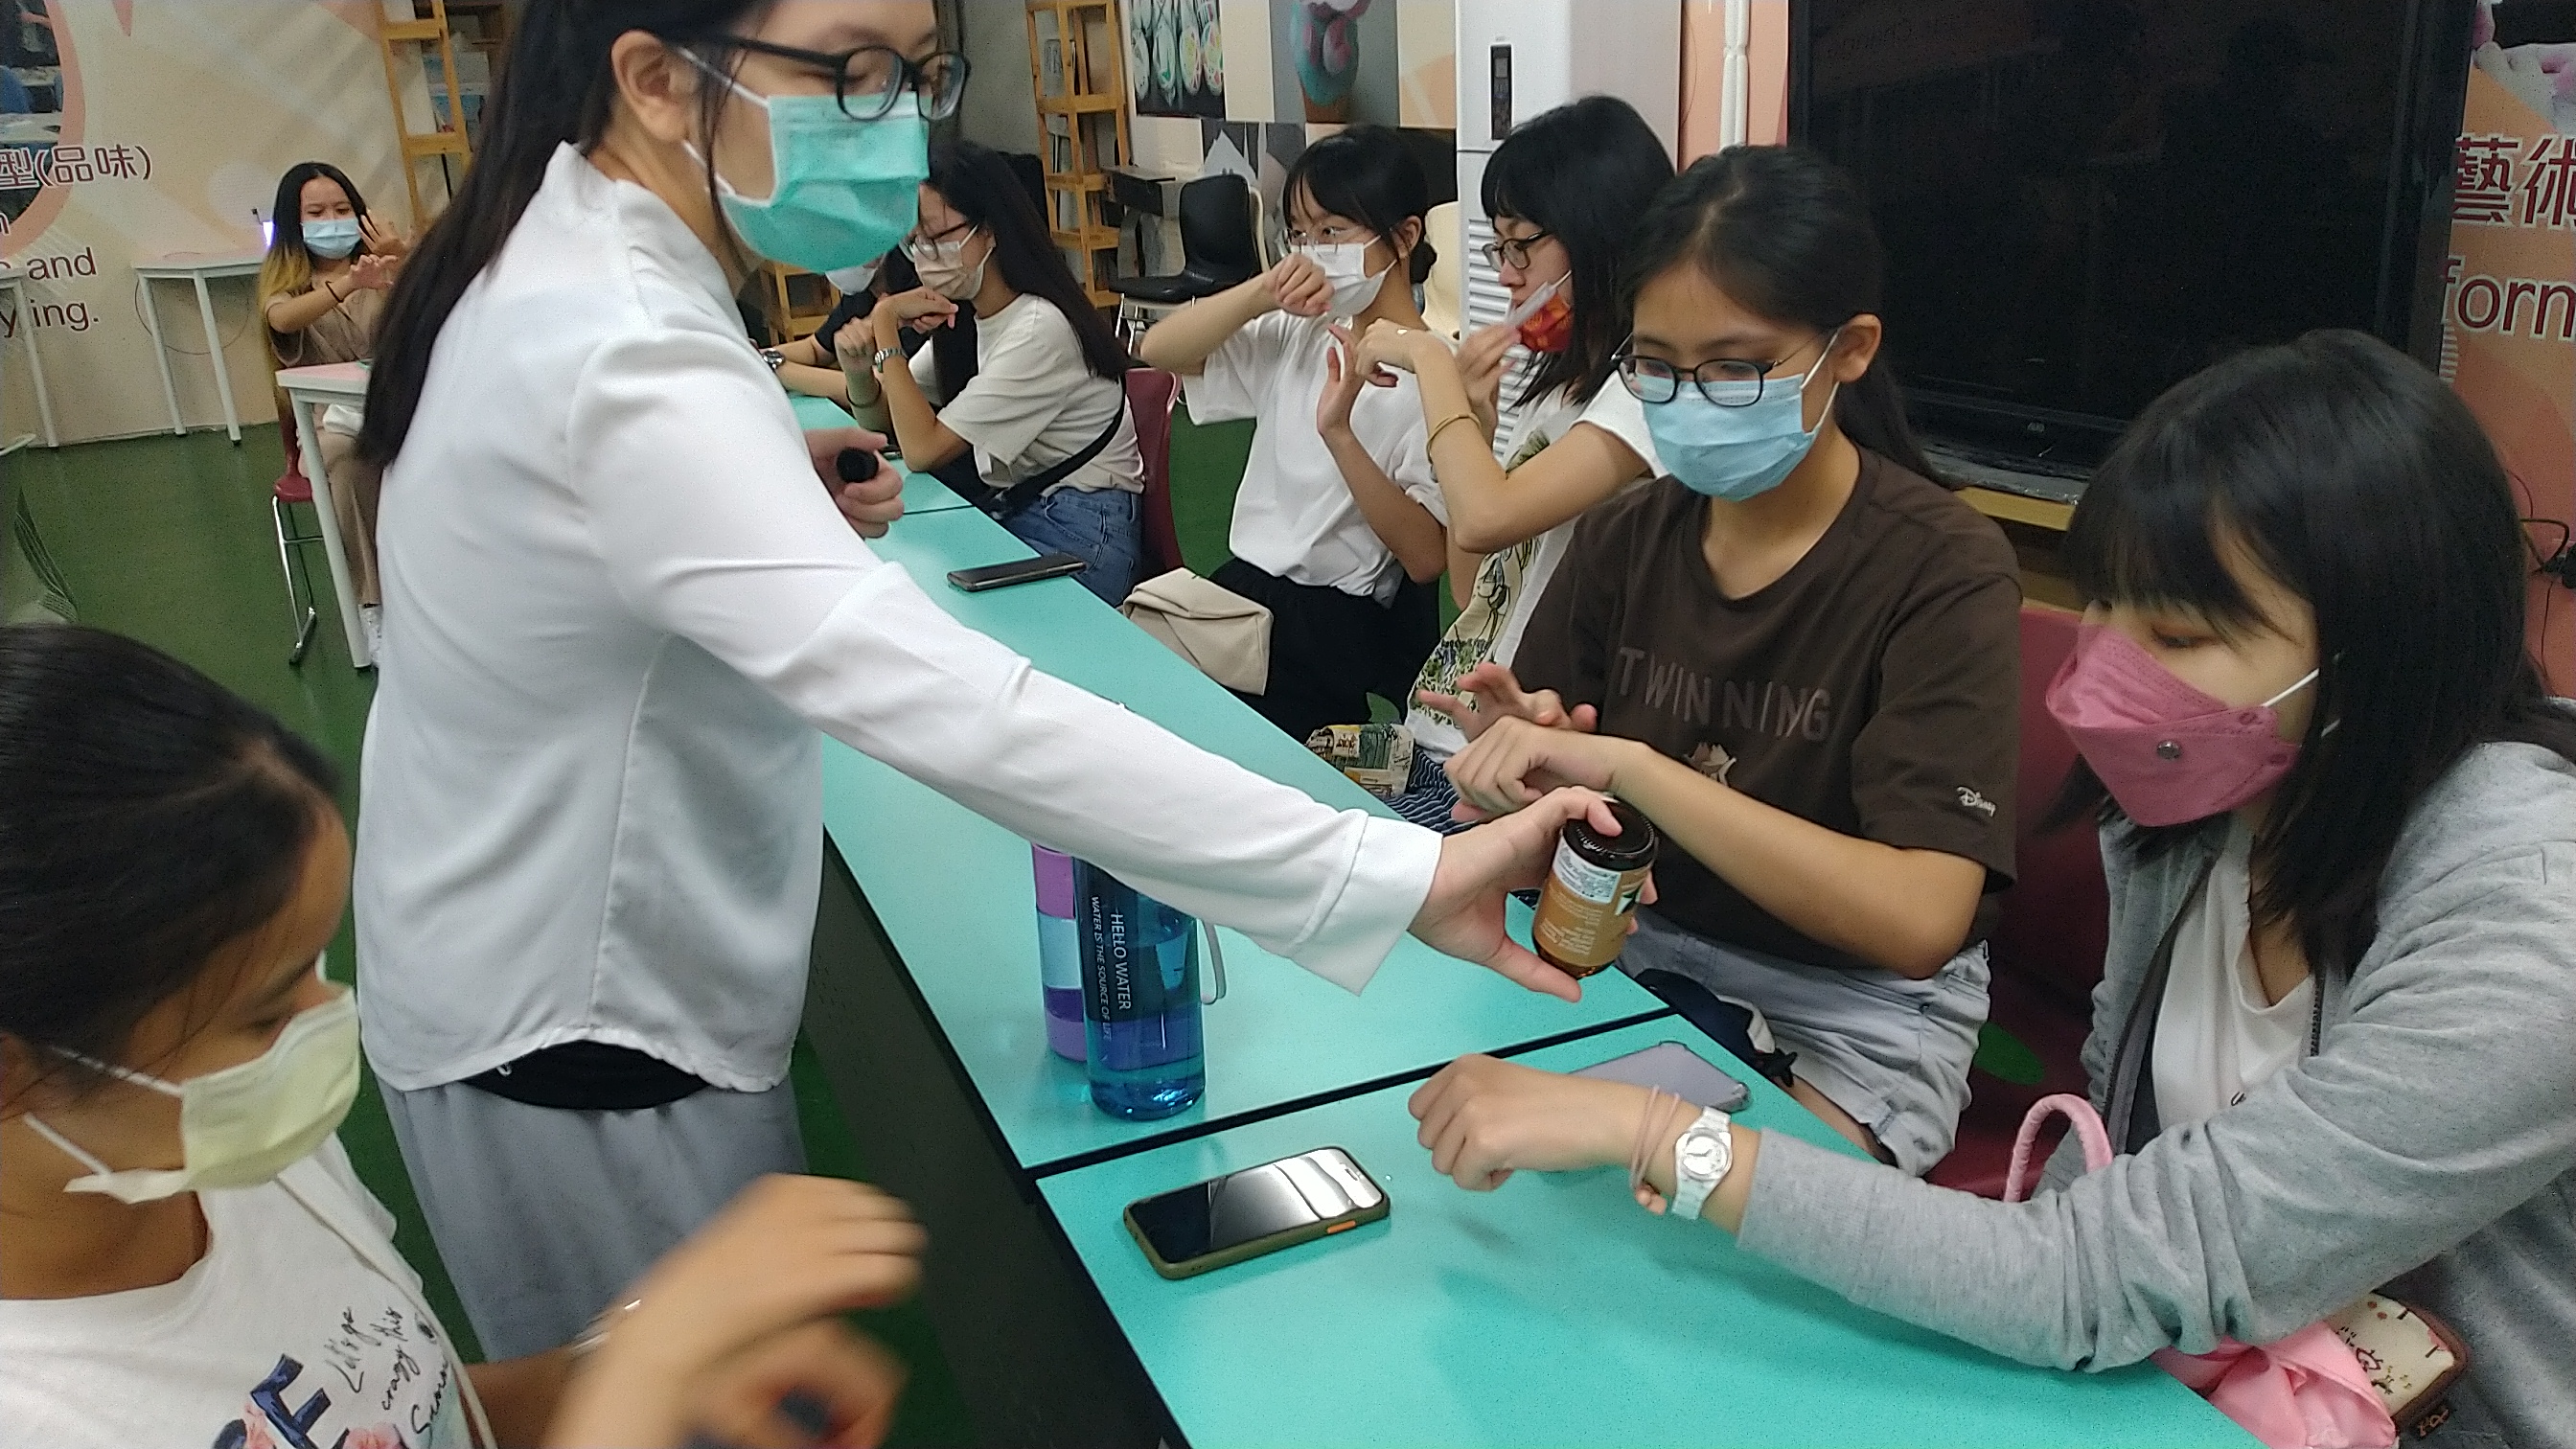 圖為在亞大登峰書苑的芳香療癒課程，參與同學們學習嗅聞精油的芳香療法。